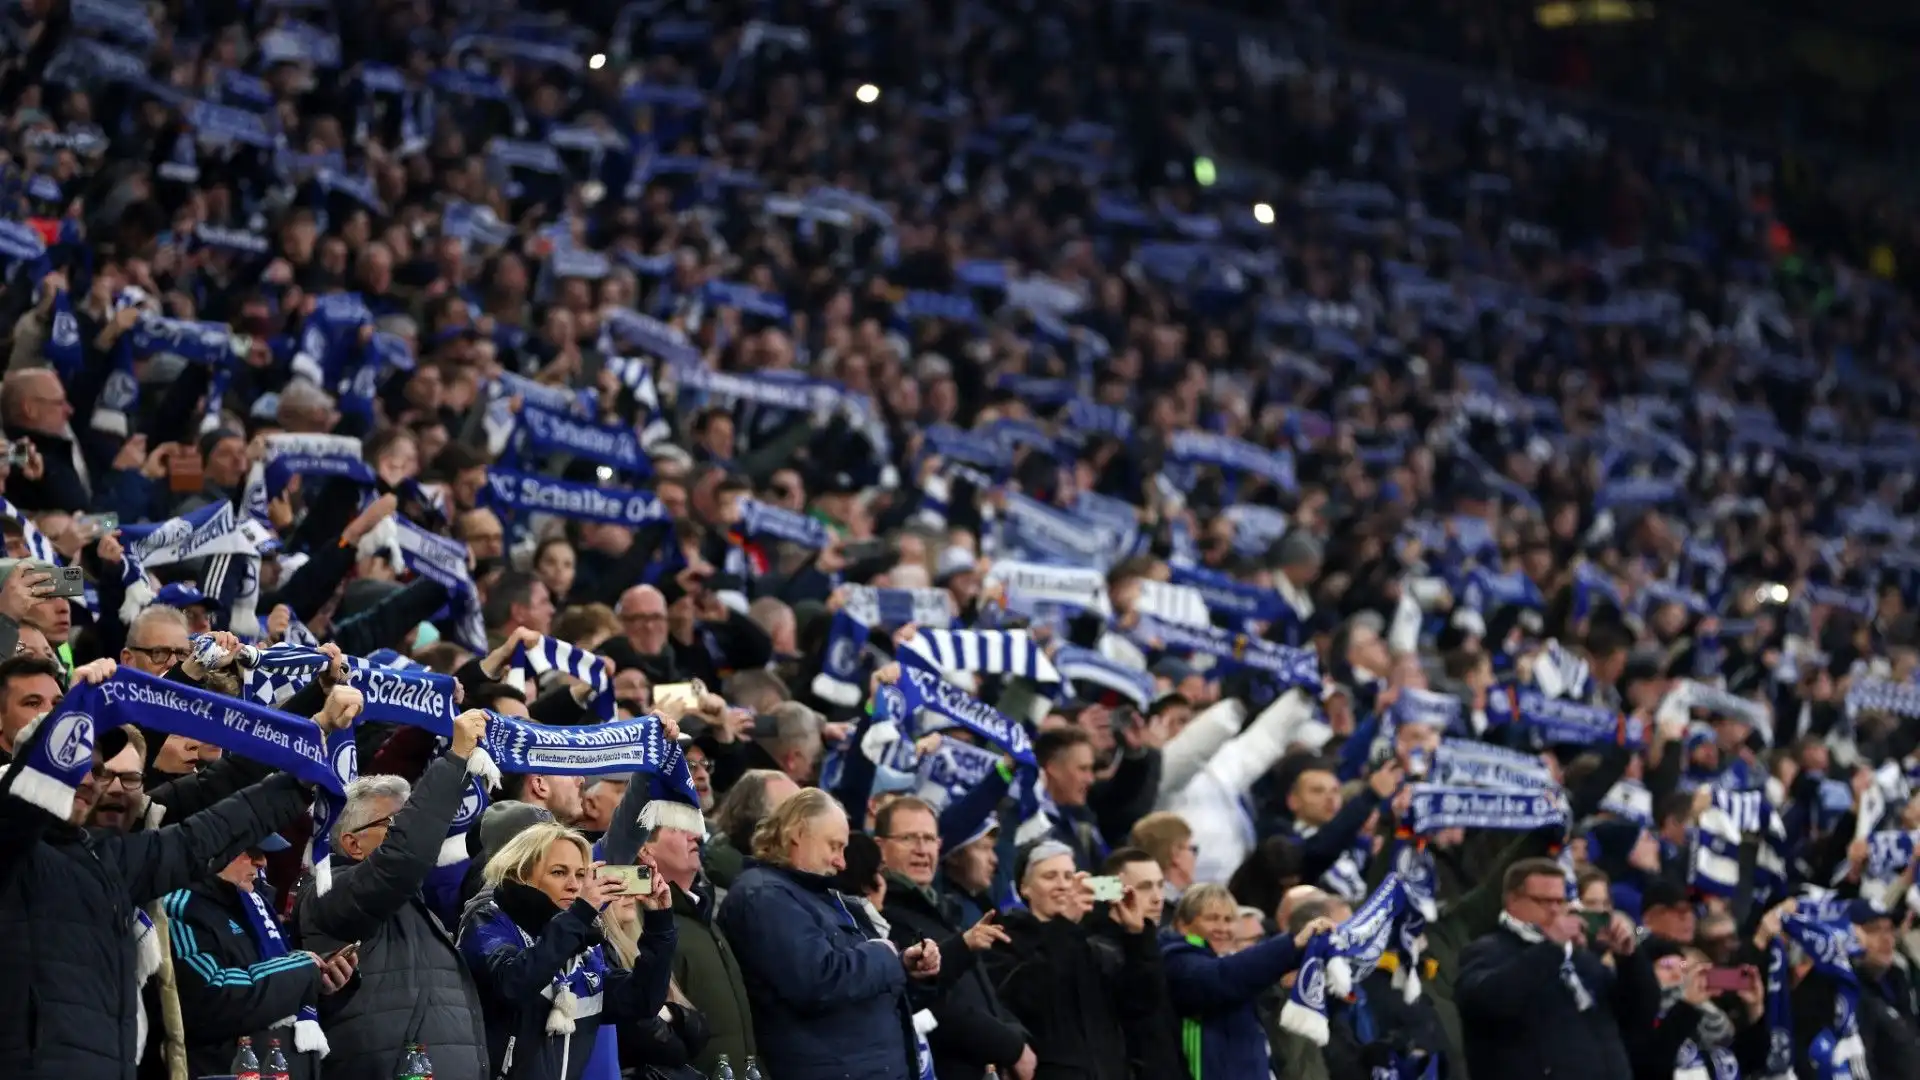 Tantissime sciarpe sventolate dai tifosi dello Schalke 04